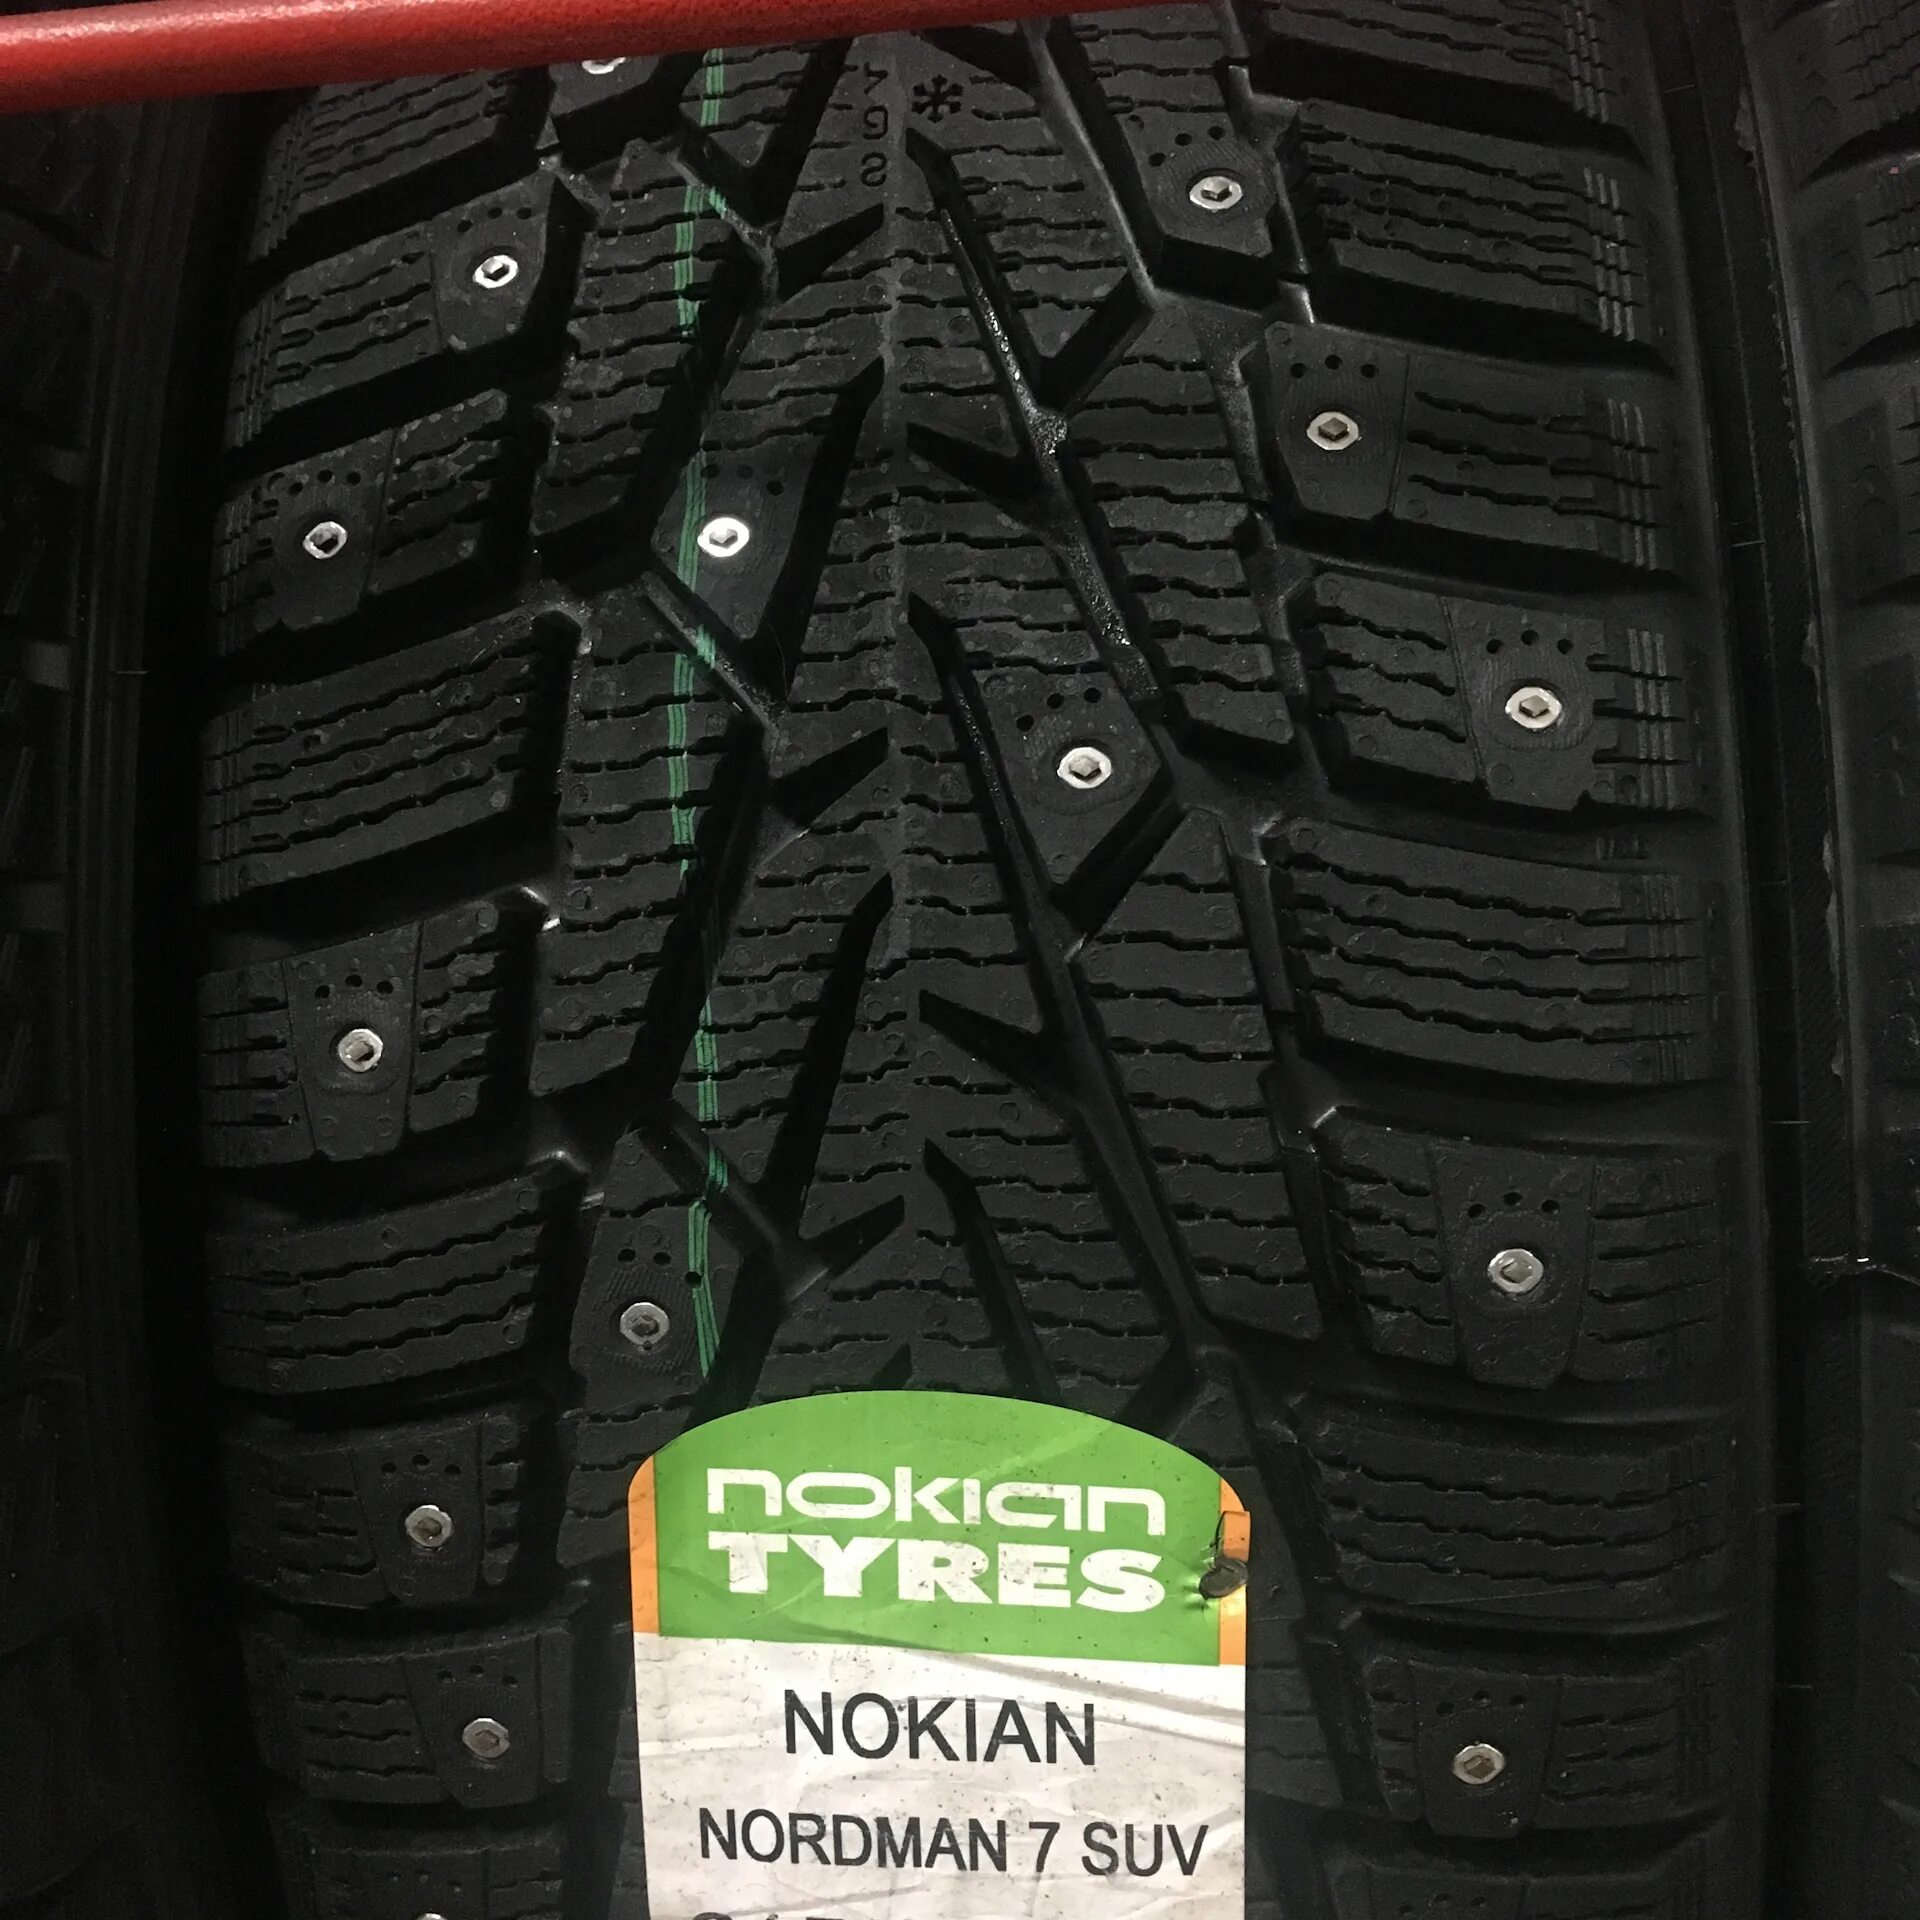 Nordman 7 suv купить. Нордман 7 SUV. Nokian Nordman 7 SUV. Nokian Tyres Nordman 7 SUV. Нордман 7 SUV 215 65 16.